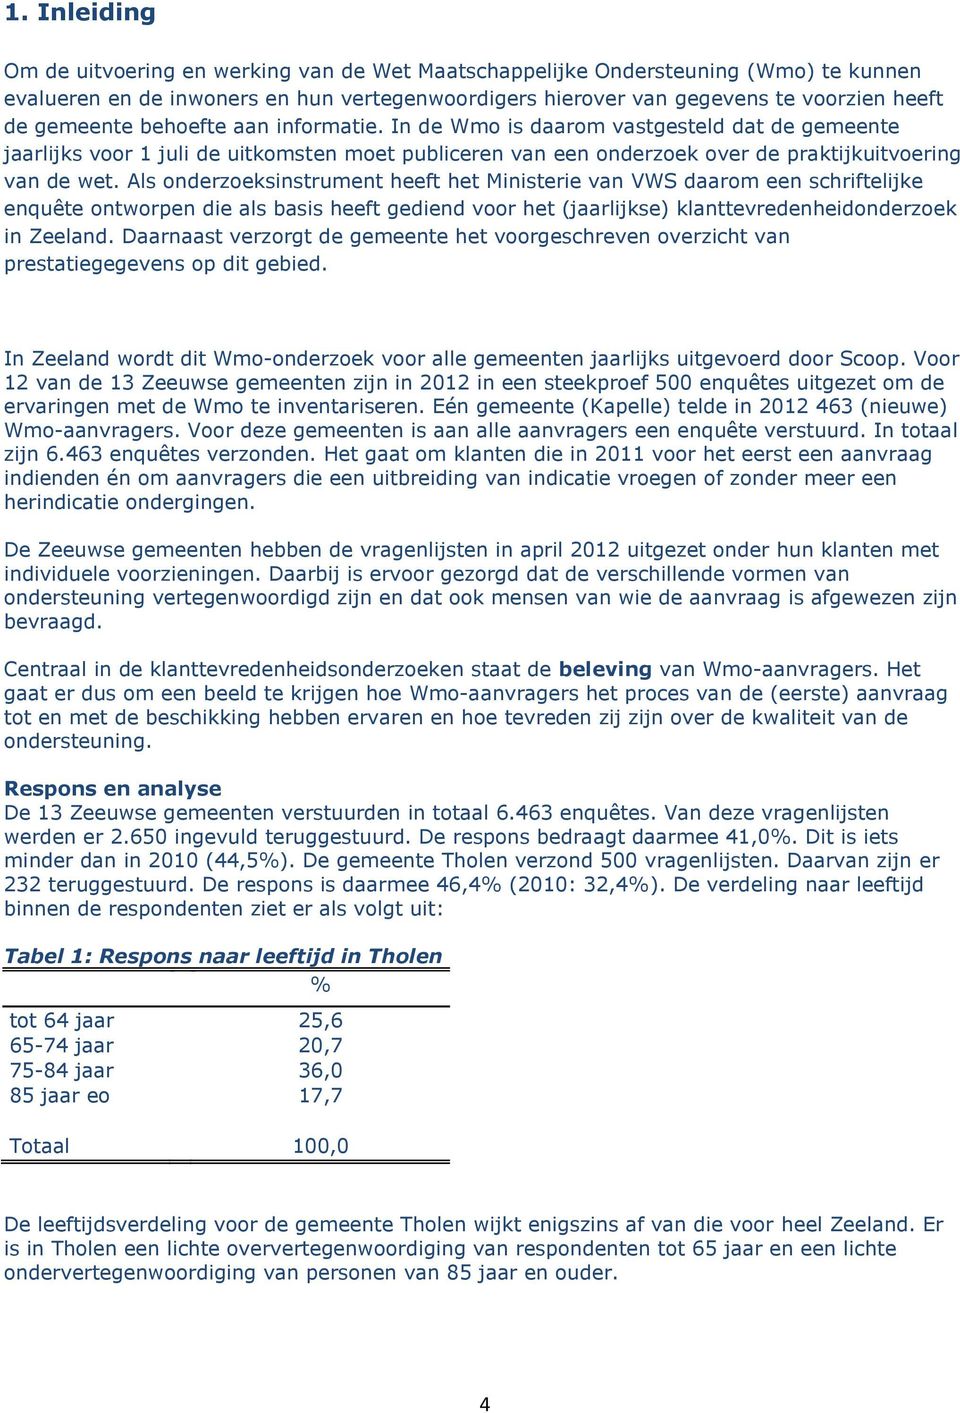 Als onderzoeksinstrument heeft het Ministerie van VWS daarom een schriftelijke enquête ontworpen die als basis heeft gediend voor het (jaarlijkse) klanttevredenheidonderzoek in Zeeland.